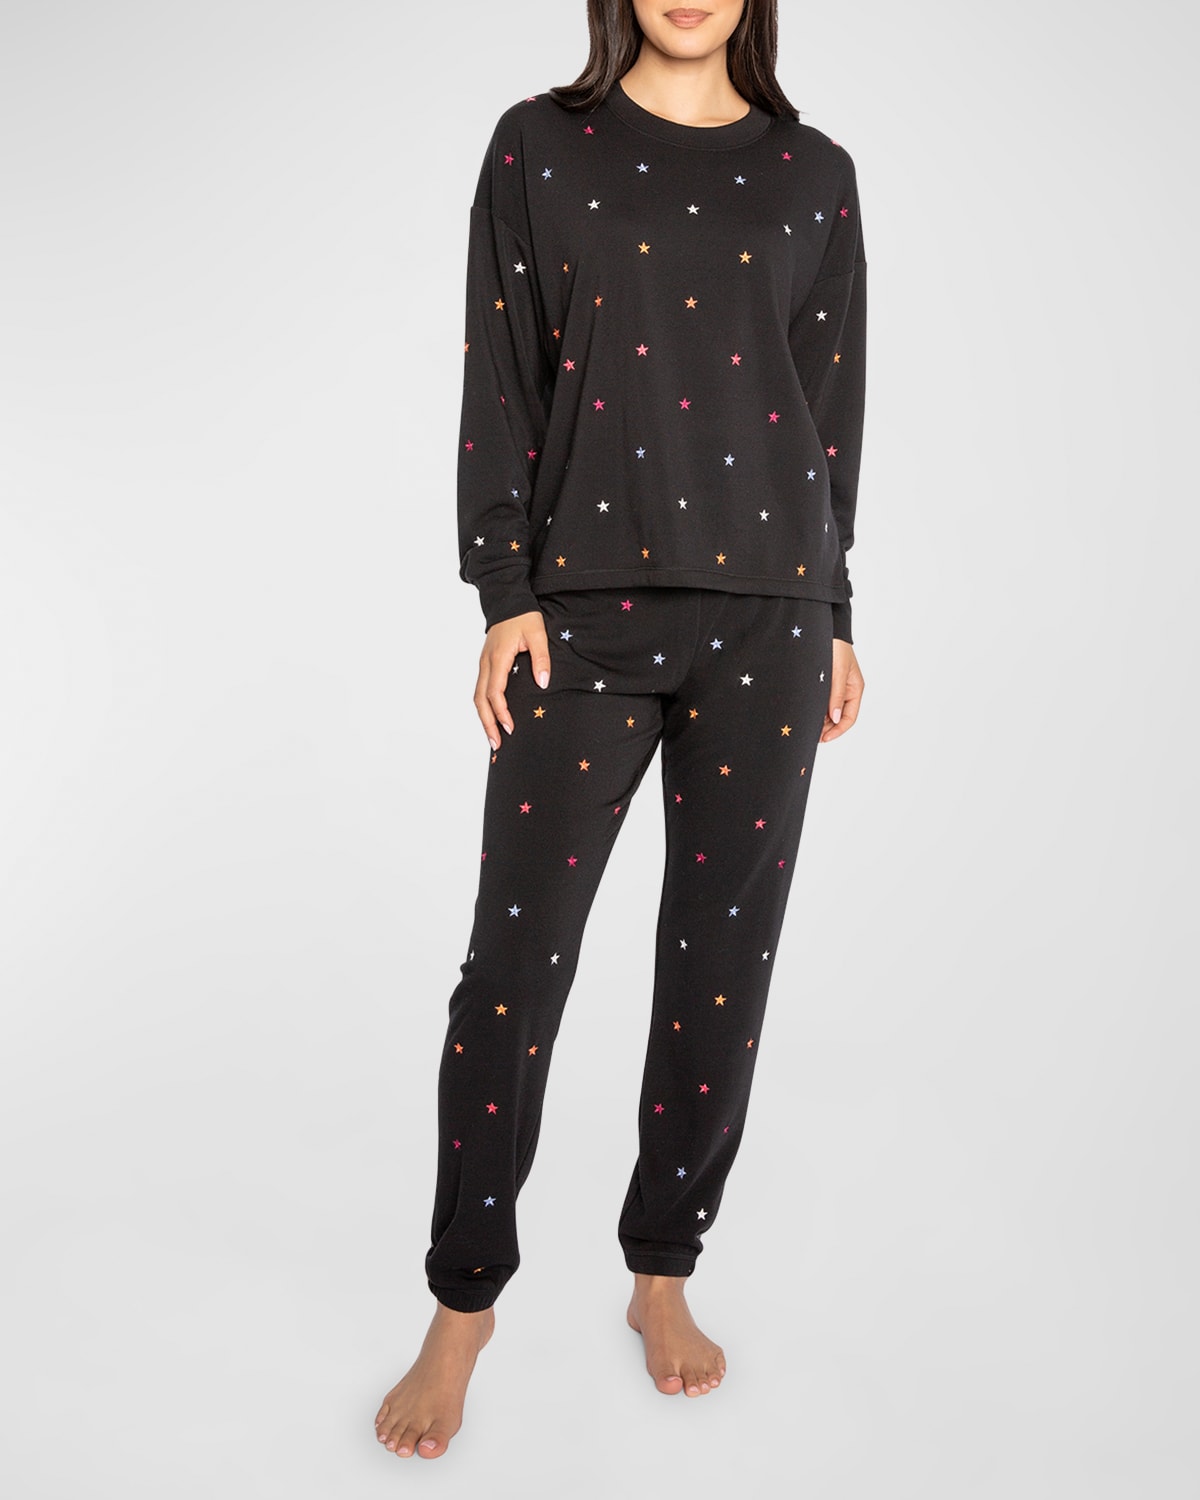 Retro Rockies Star-Embroidered Pajama Set